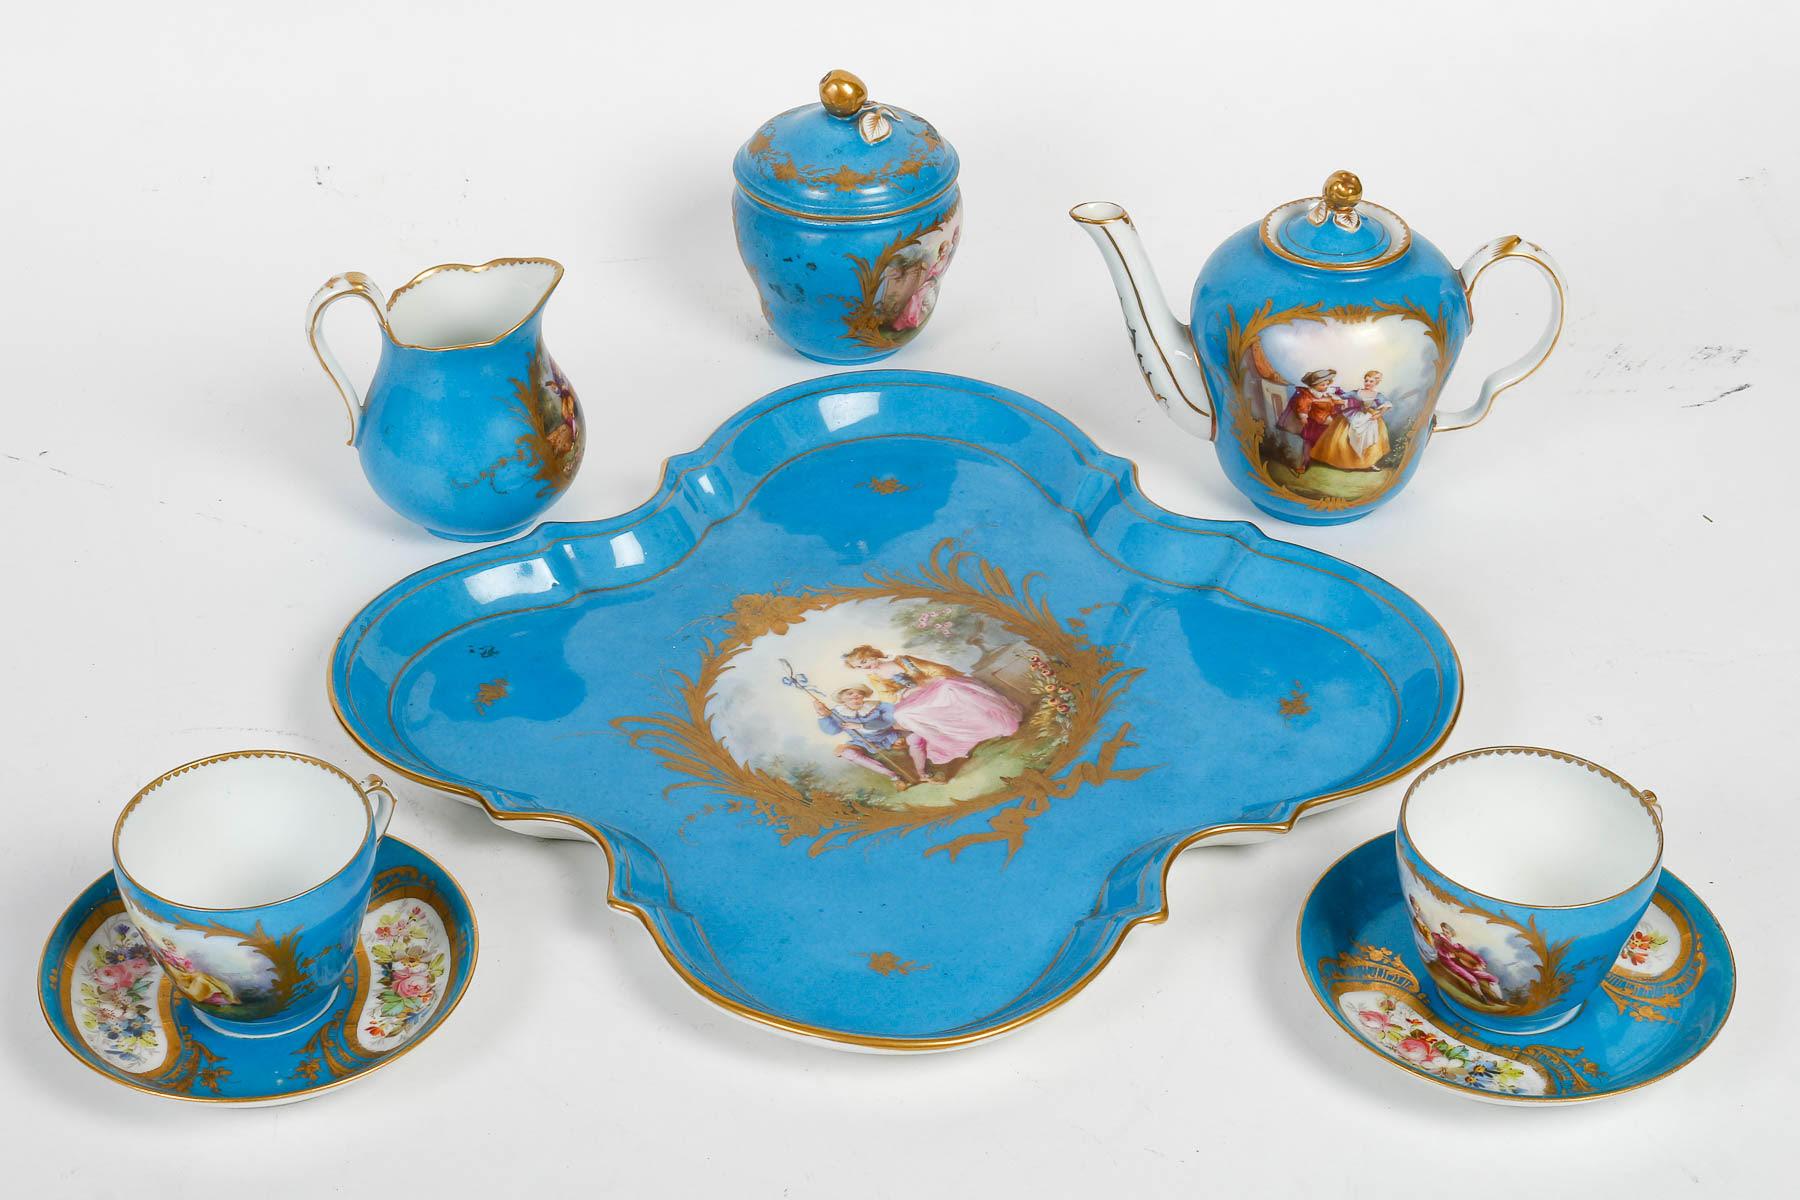 Tête-à-tête, Tea service, Sèvres porcelain, Napoleon III period.

Tea service, tête-à-tête in 19th century Sèvres porcelain, Napoleon III period, rich painted and gilded decoration on a sky blue background, comprising a teapot, a pot-à-lait, a sugar